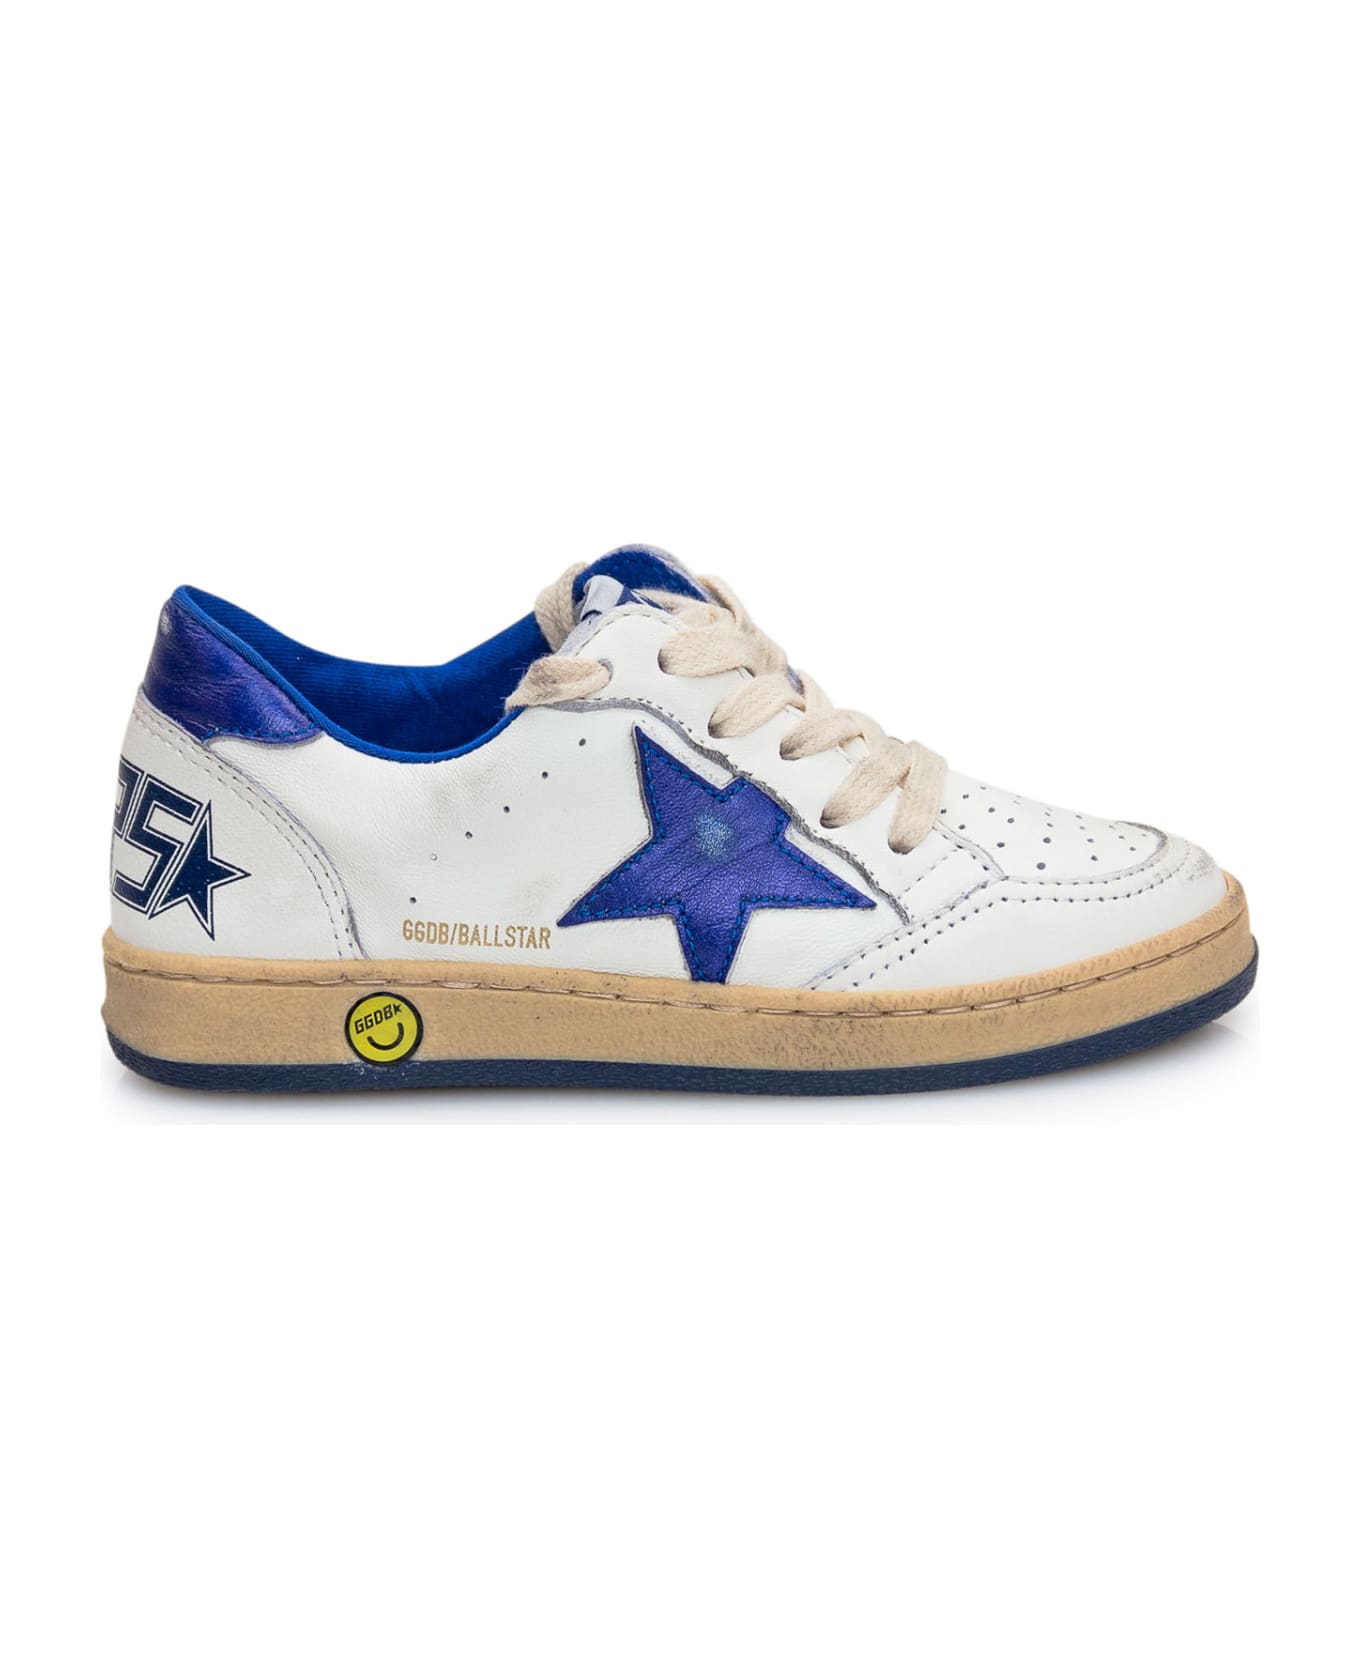 Golden Goose Ballstar Sneaker - White/blue